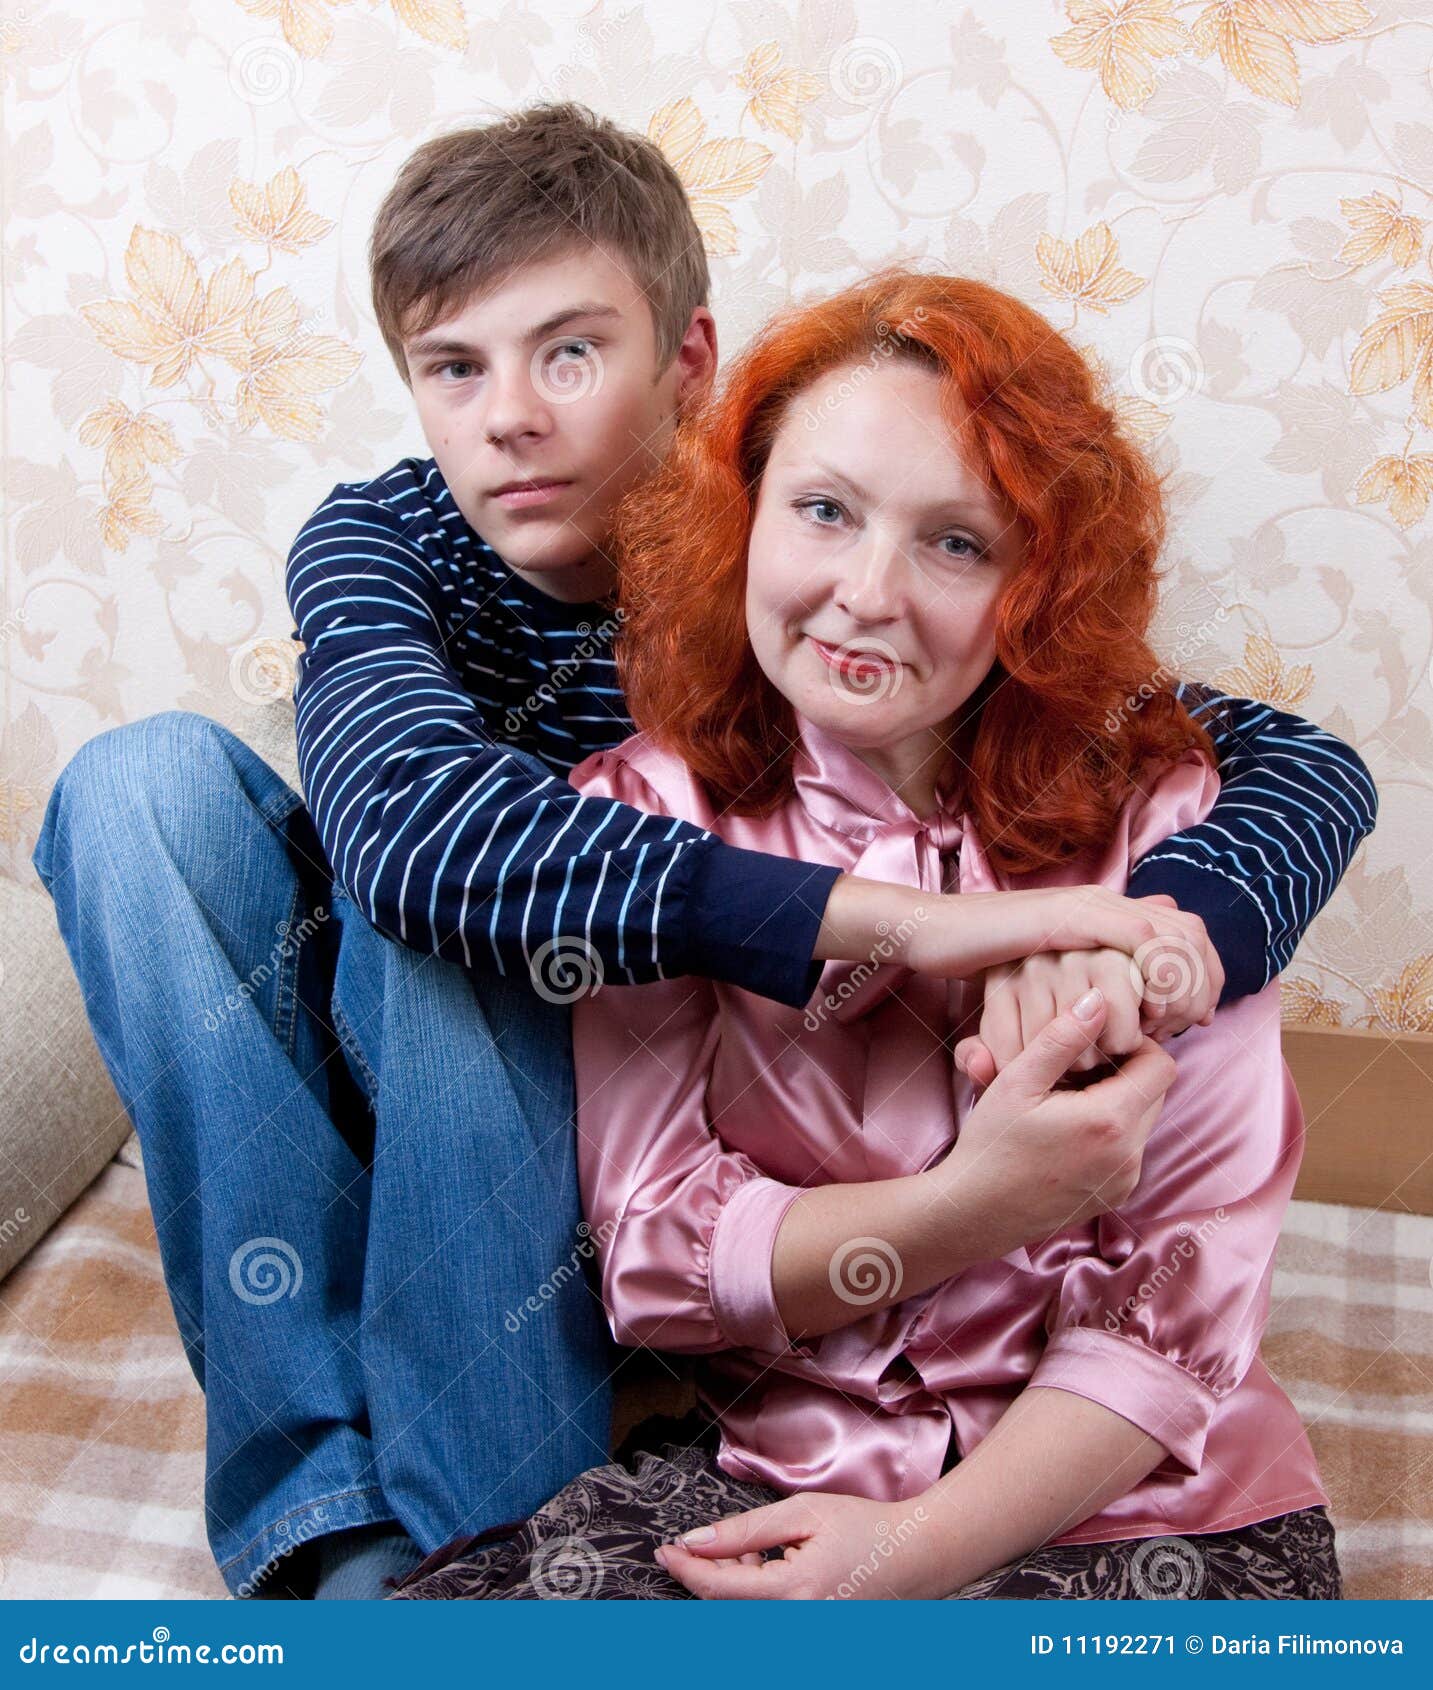 Русскую маму в е. Рыжая с сыном. Фотосессия мать и сын. Странные мама с сыном.